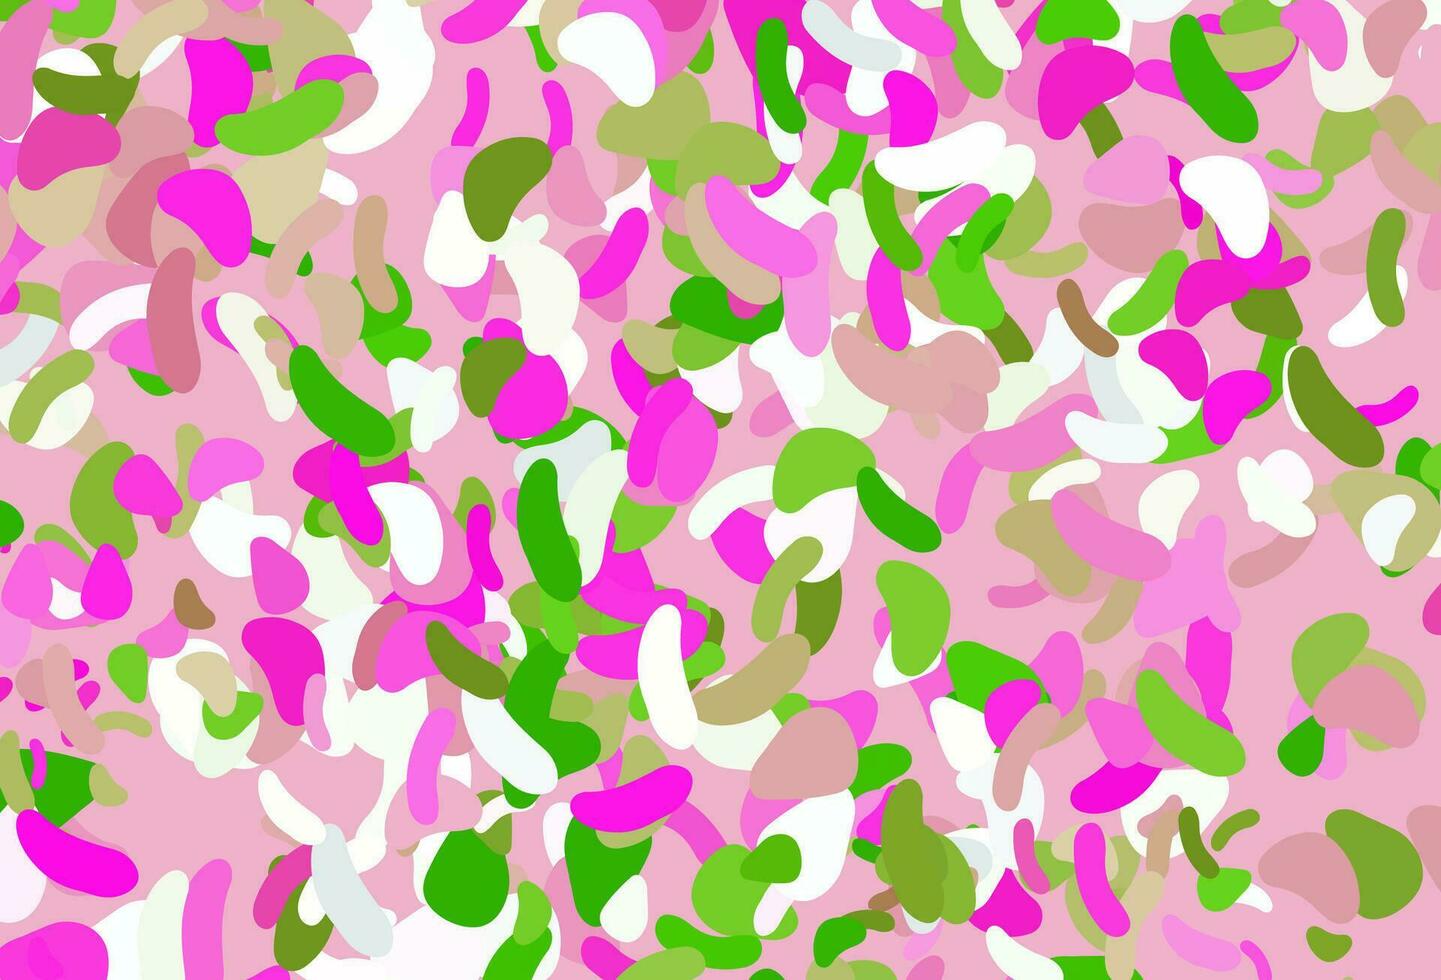 textura de vector rosa claro, verde con formas aleatorias.